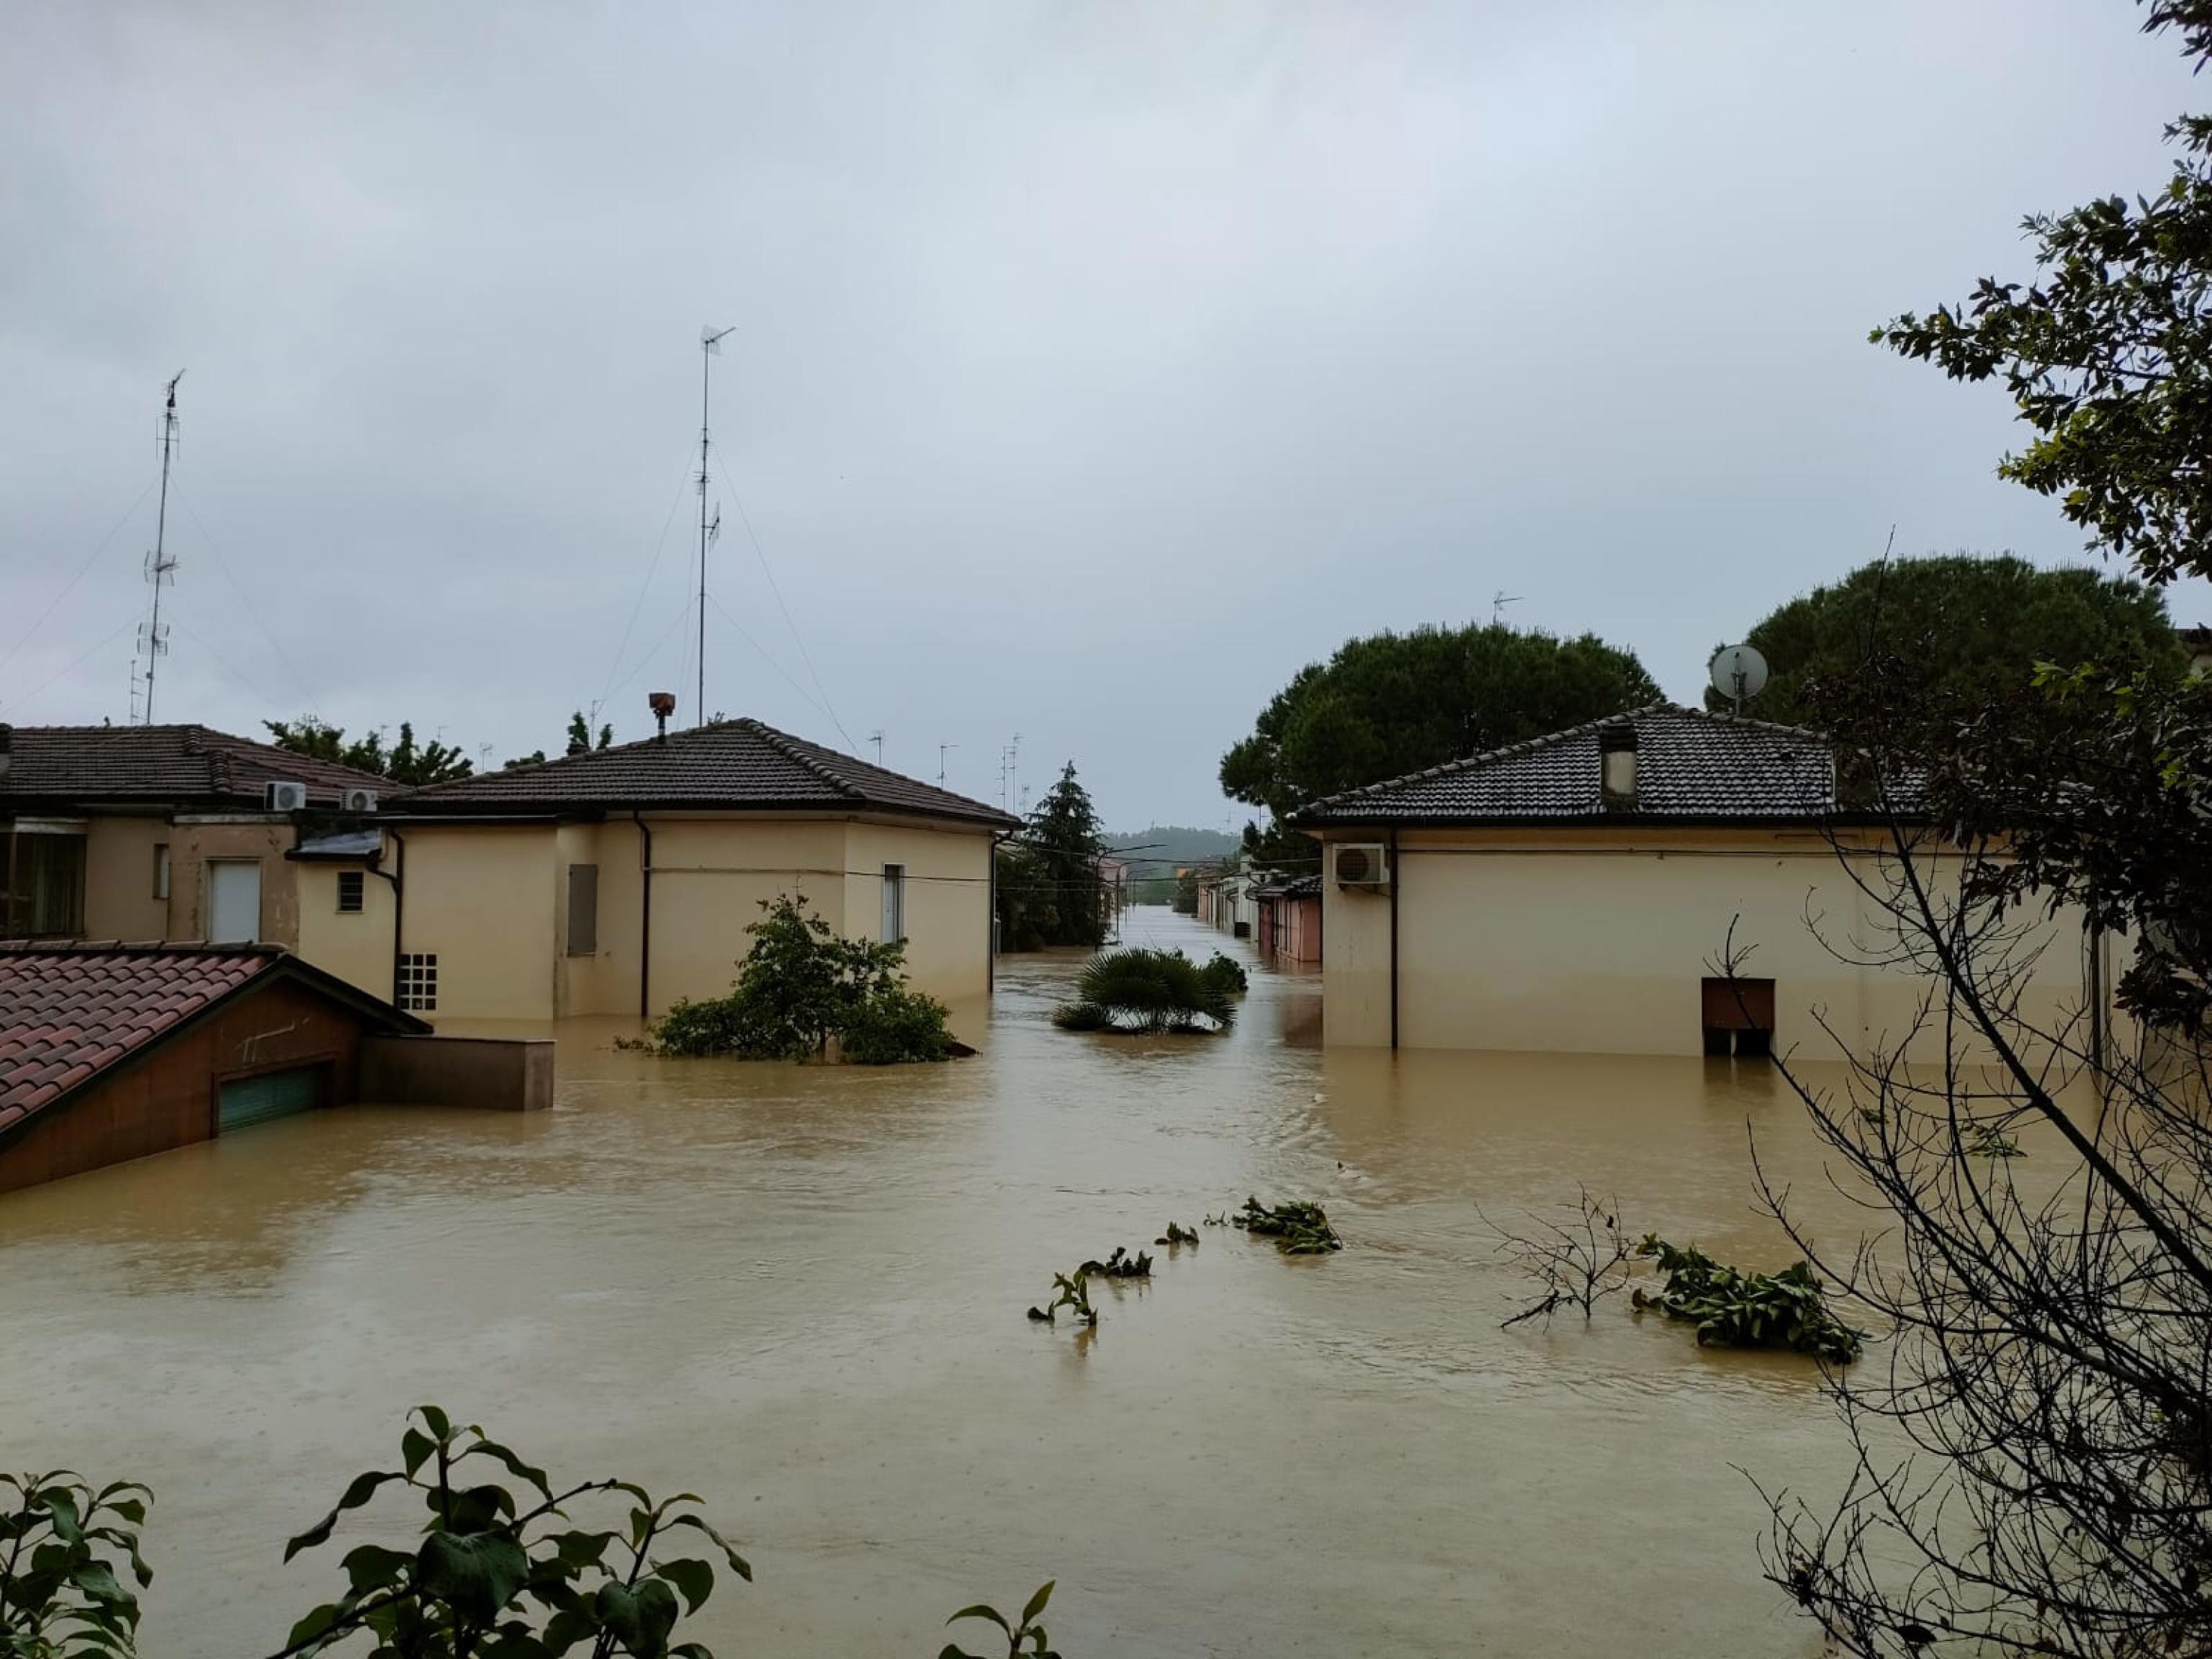 Zonas inundadas en el norte de Italia por las lluvias. Faenza, es la ciudad más afectada. (Foto Prensa Libre: EFE)